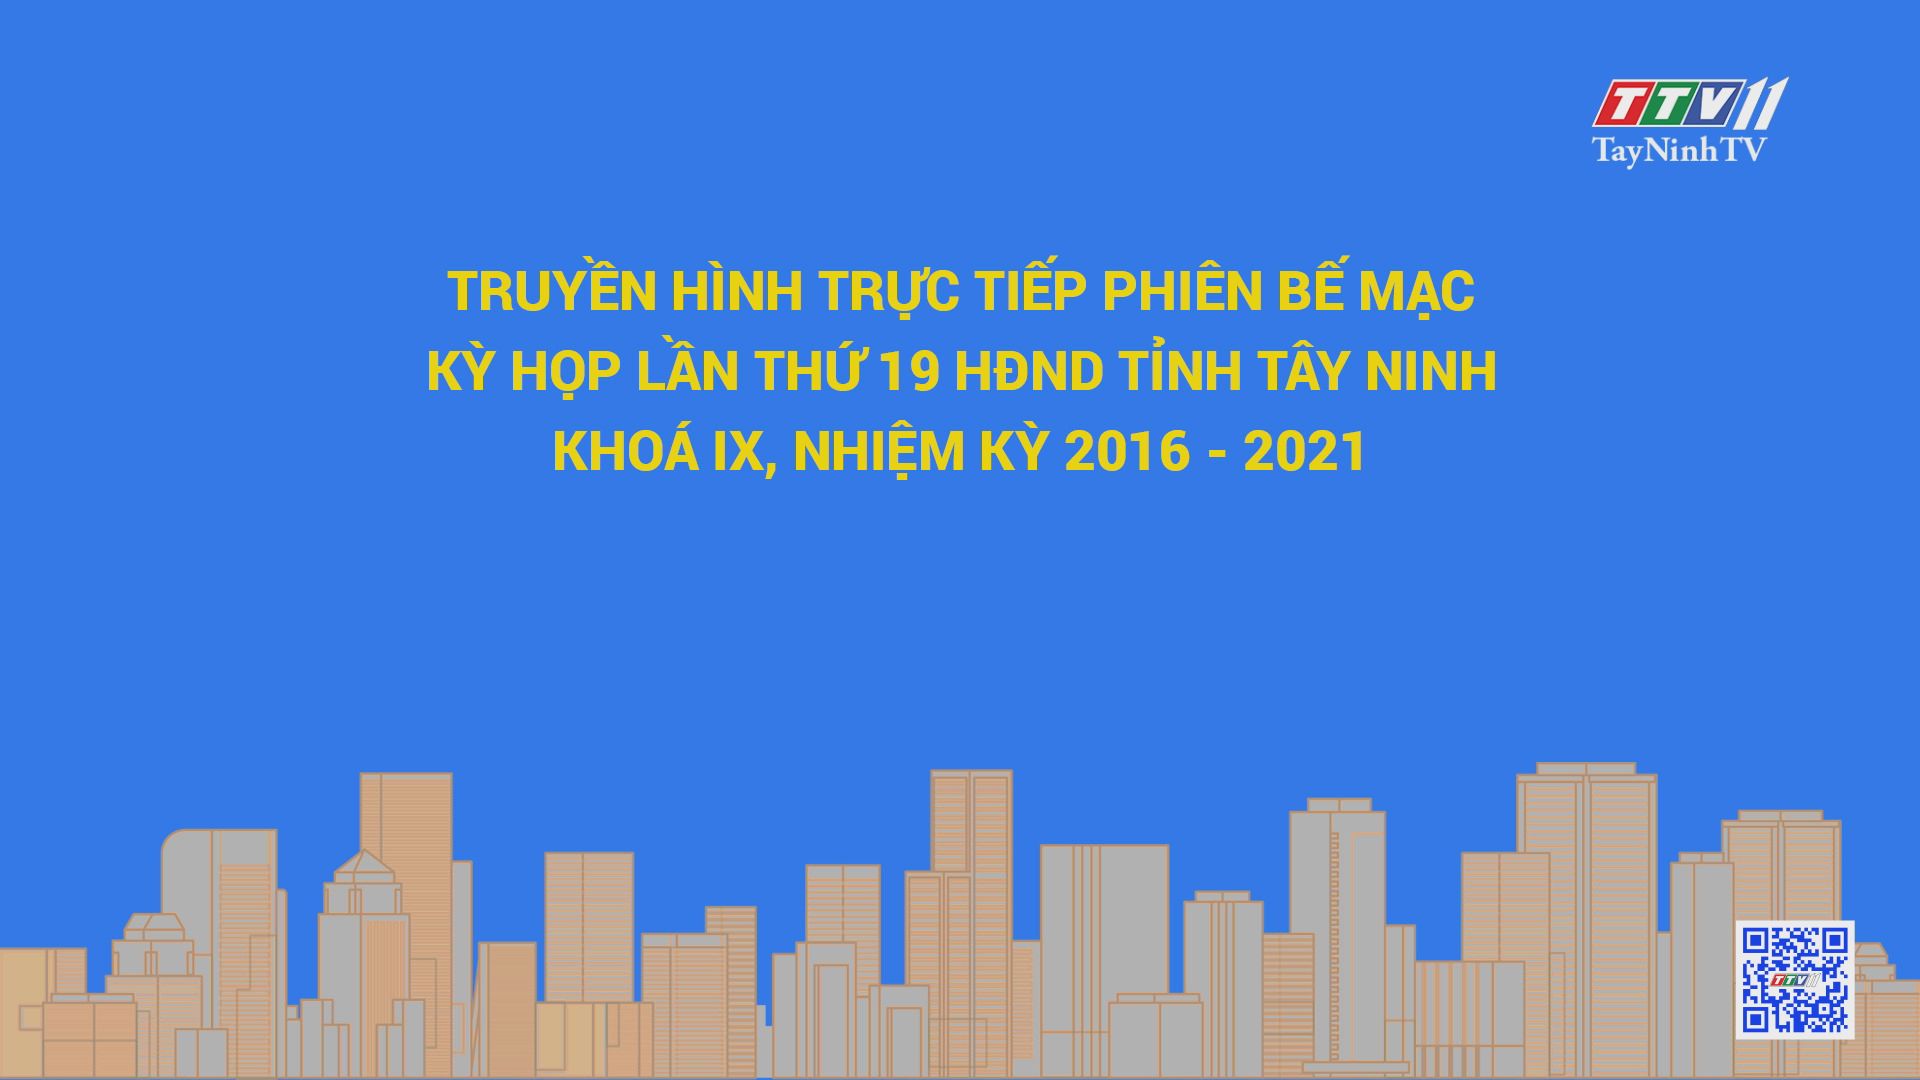 PHIÊN BẾ MẠC KỲ HỌP THỨ 19 HĐND TỈNH TÂY NINH KHÓA IX, NHIỆM KỲ 2016-2021 | TayNinhTV 